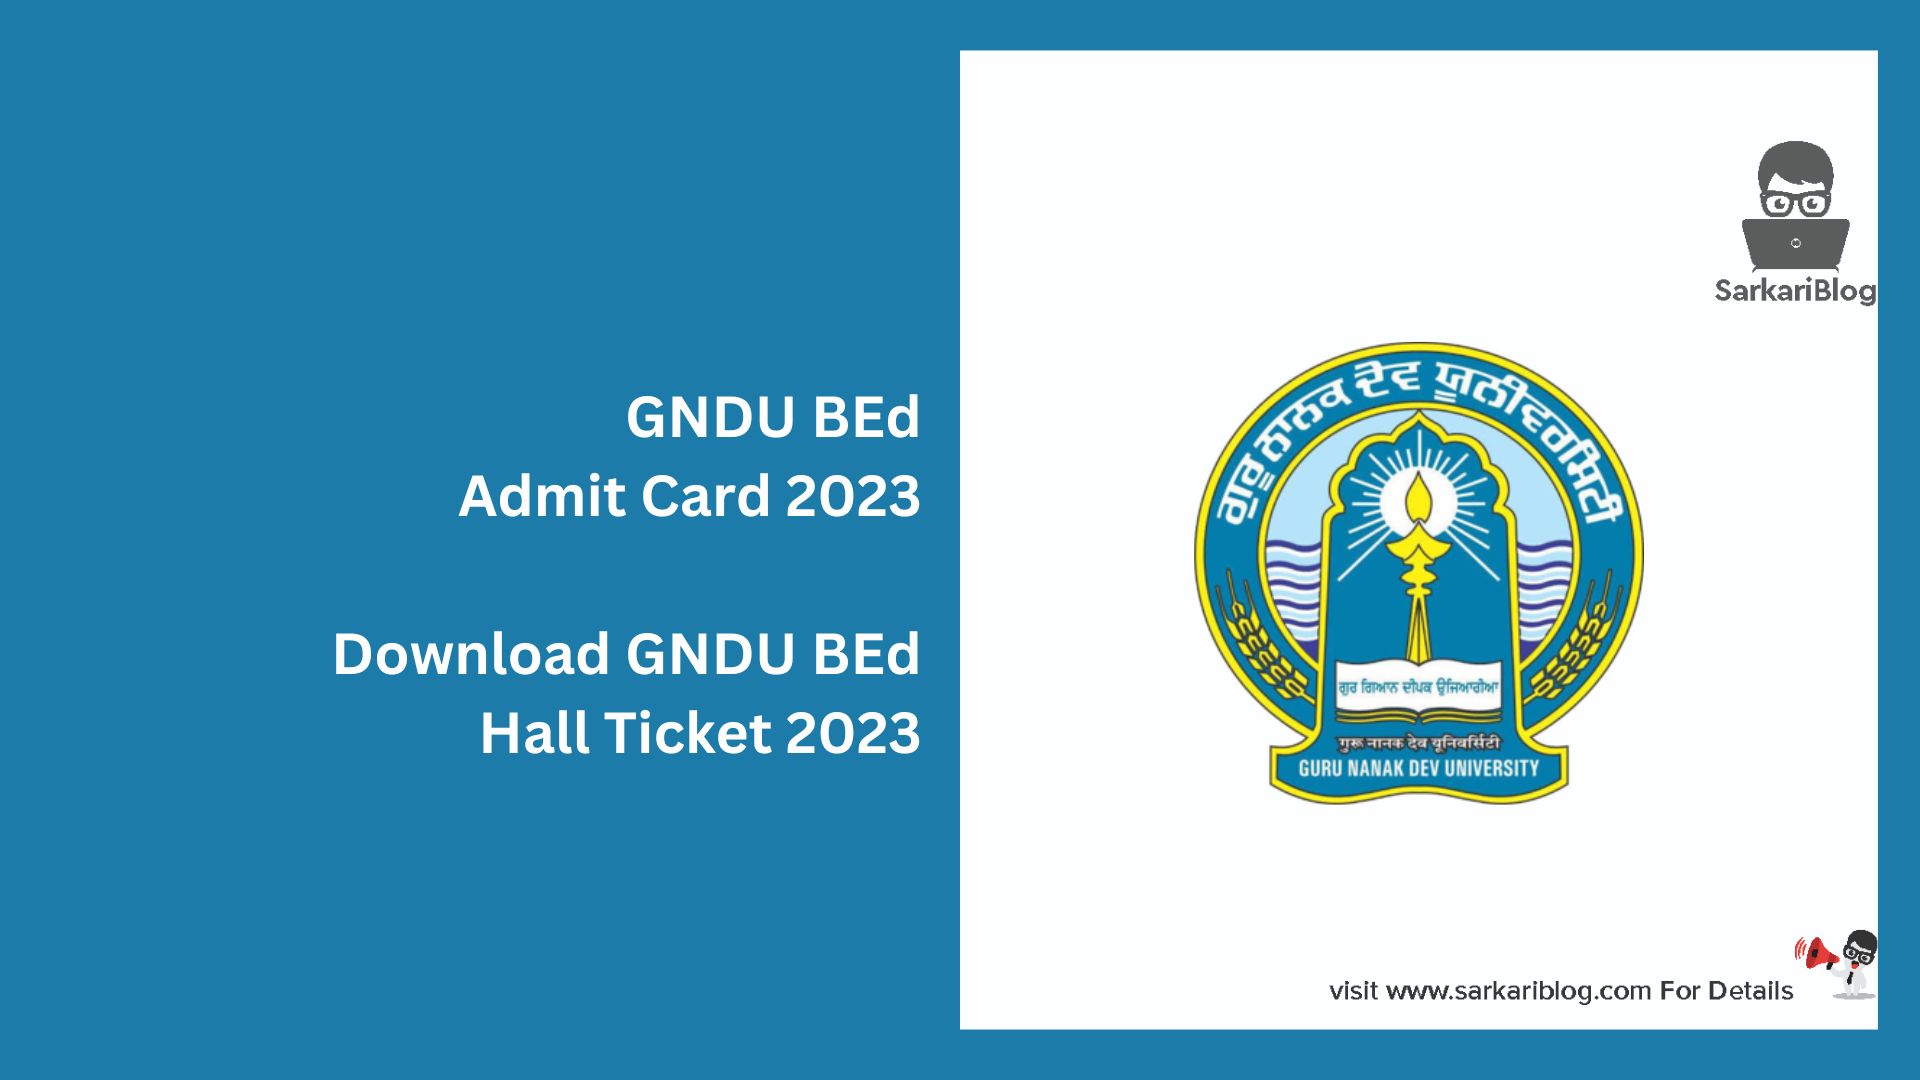 GNDU BEd Admit Card 2023